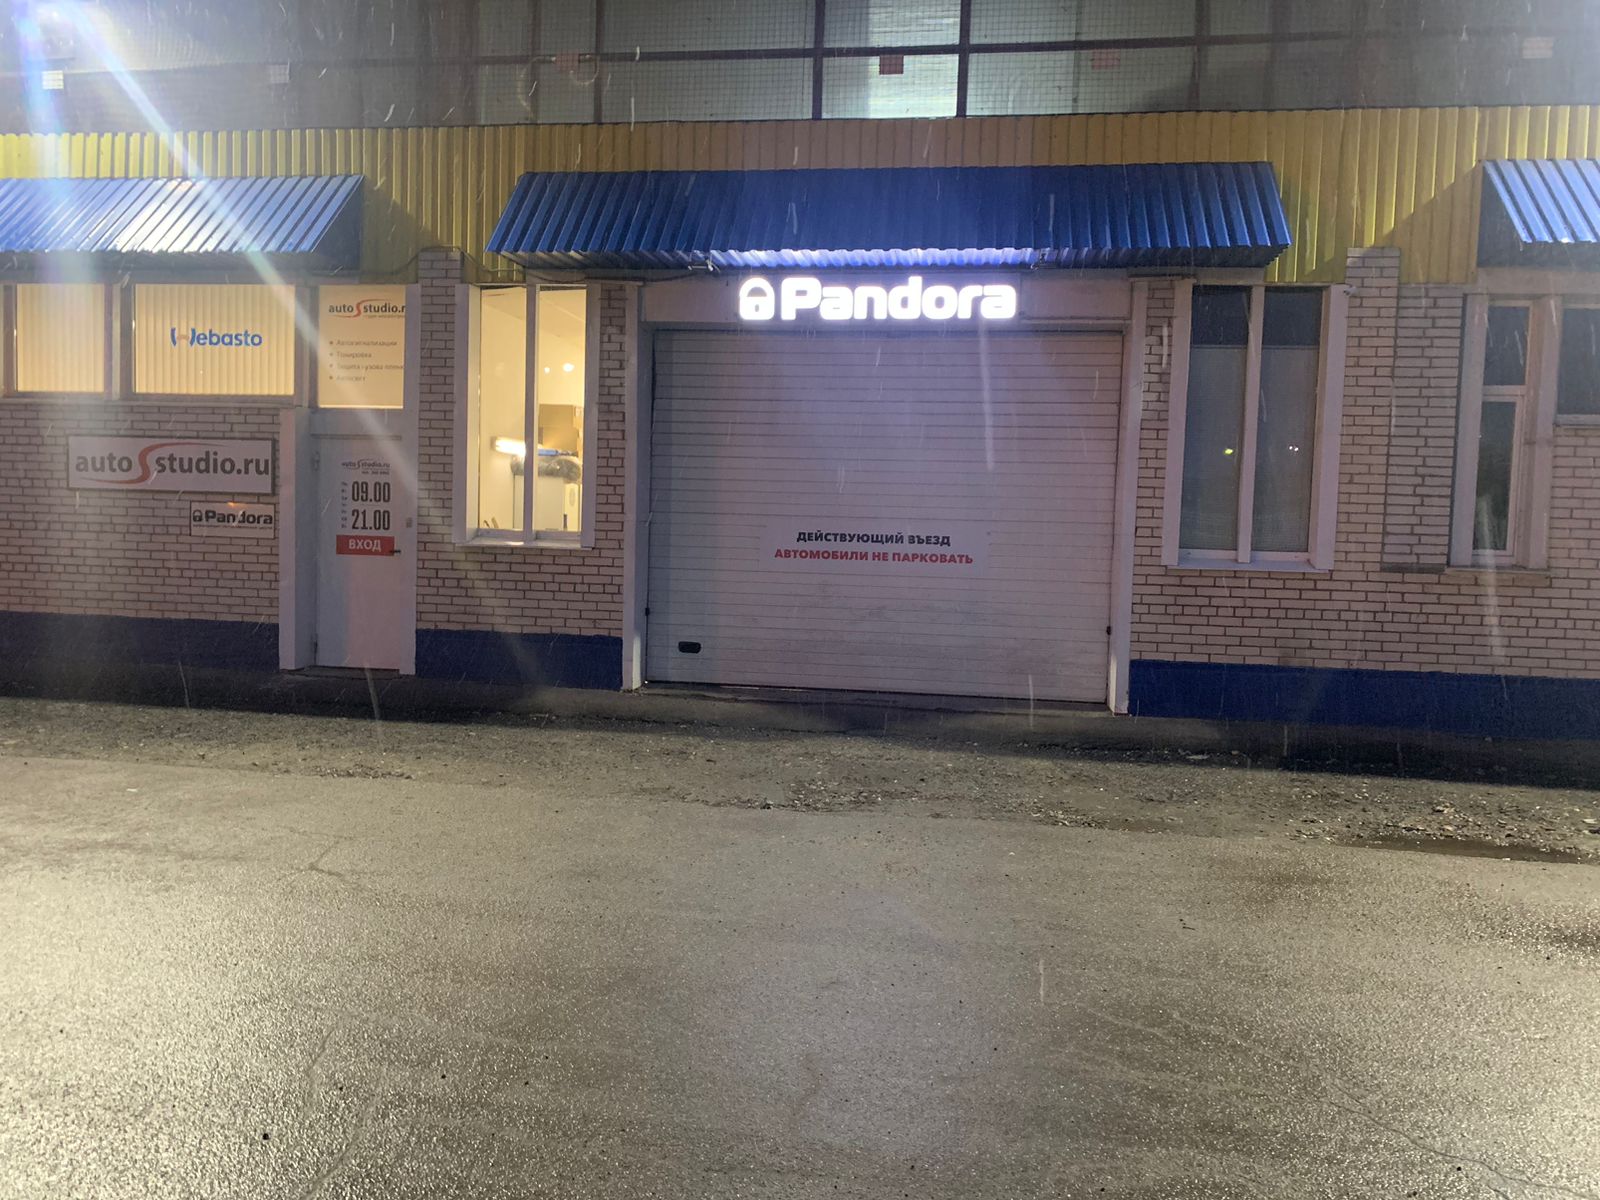 Официальный центр Pandora (Пандора) и Pandect (Пандект) в Санкт-Петербурге